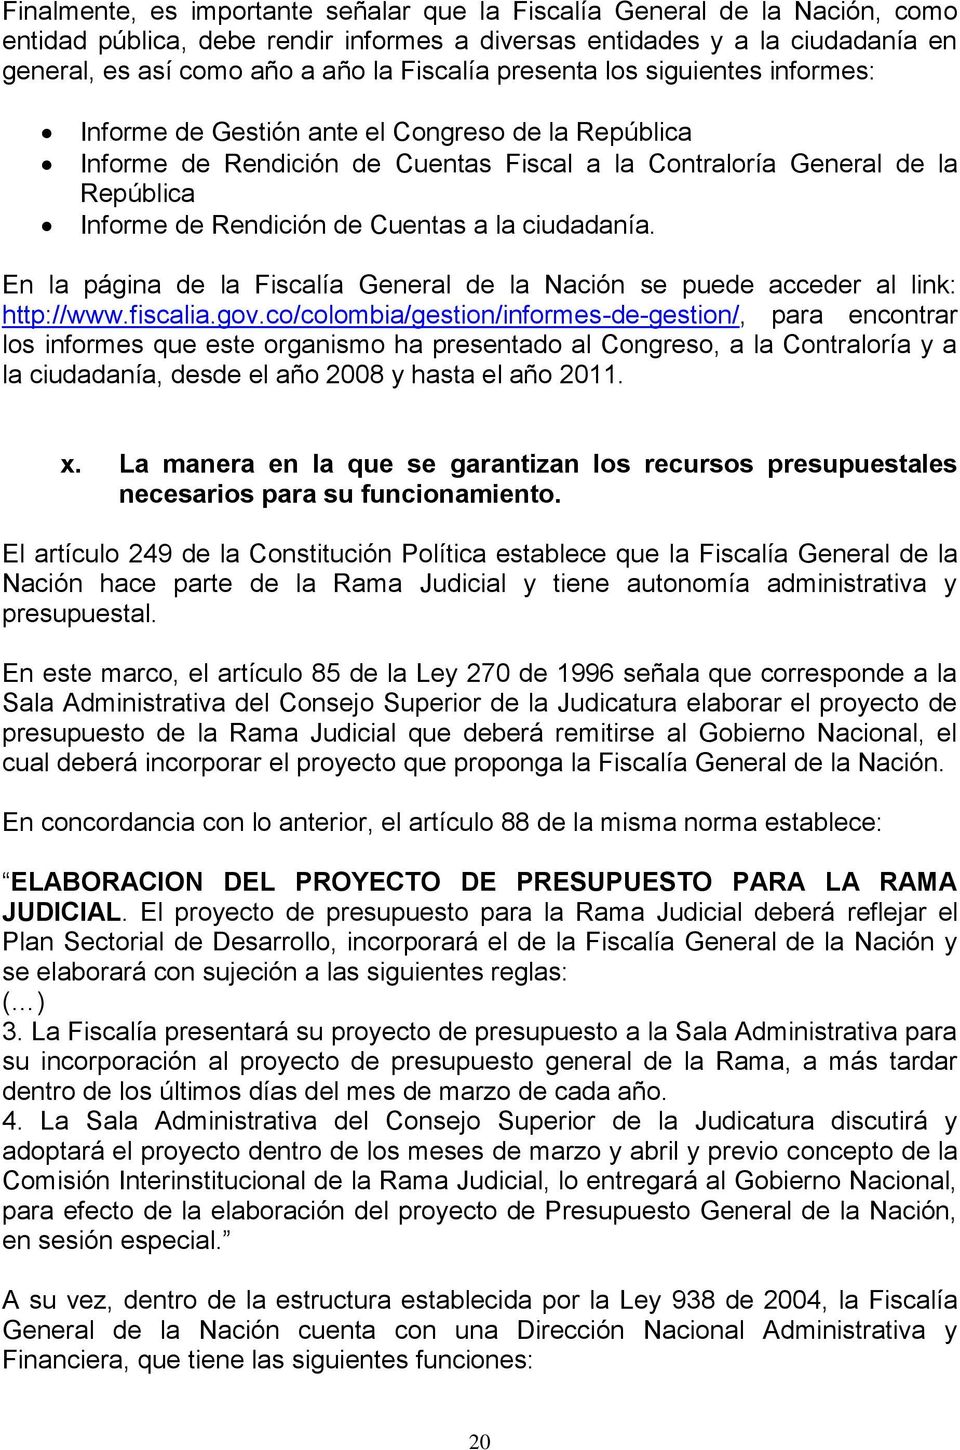 la ciudadanía. En la página de la Fiscalía General de la Nación se puede acceder al link: http://www.fiscalia.gov.